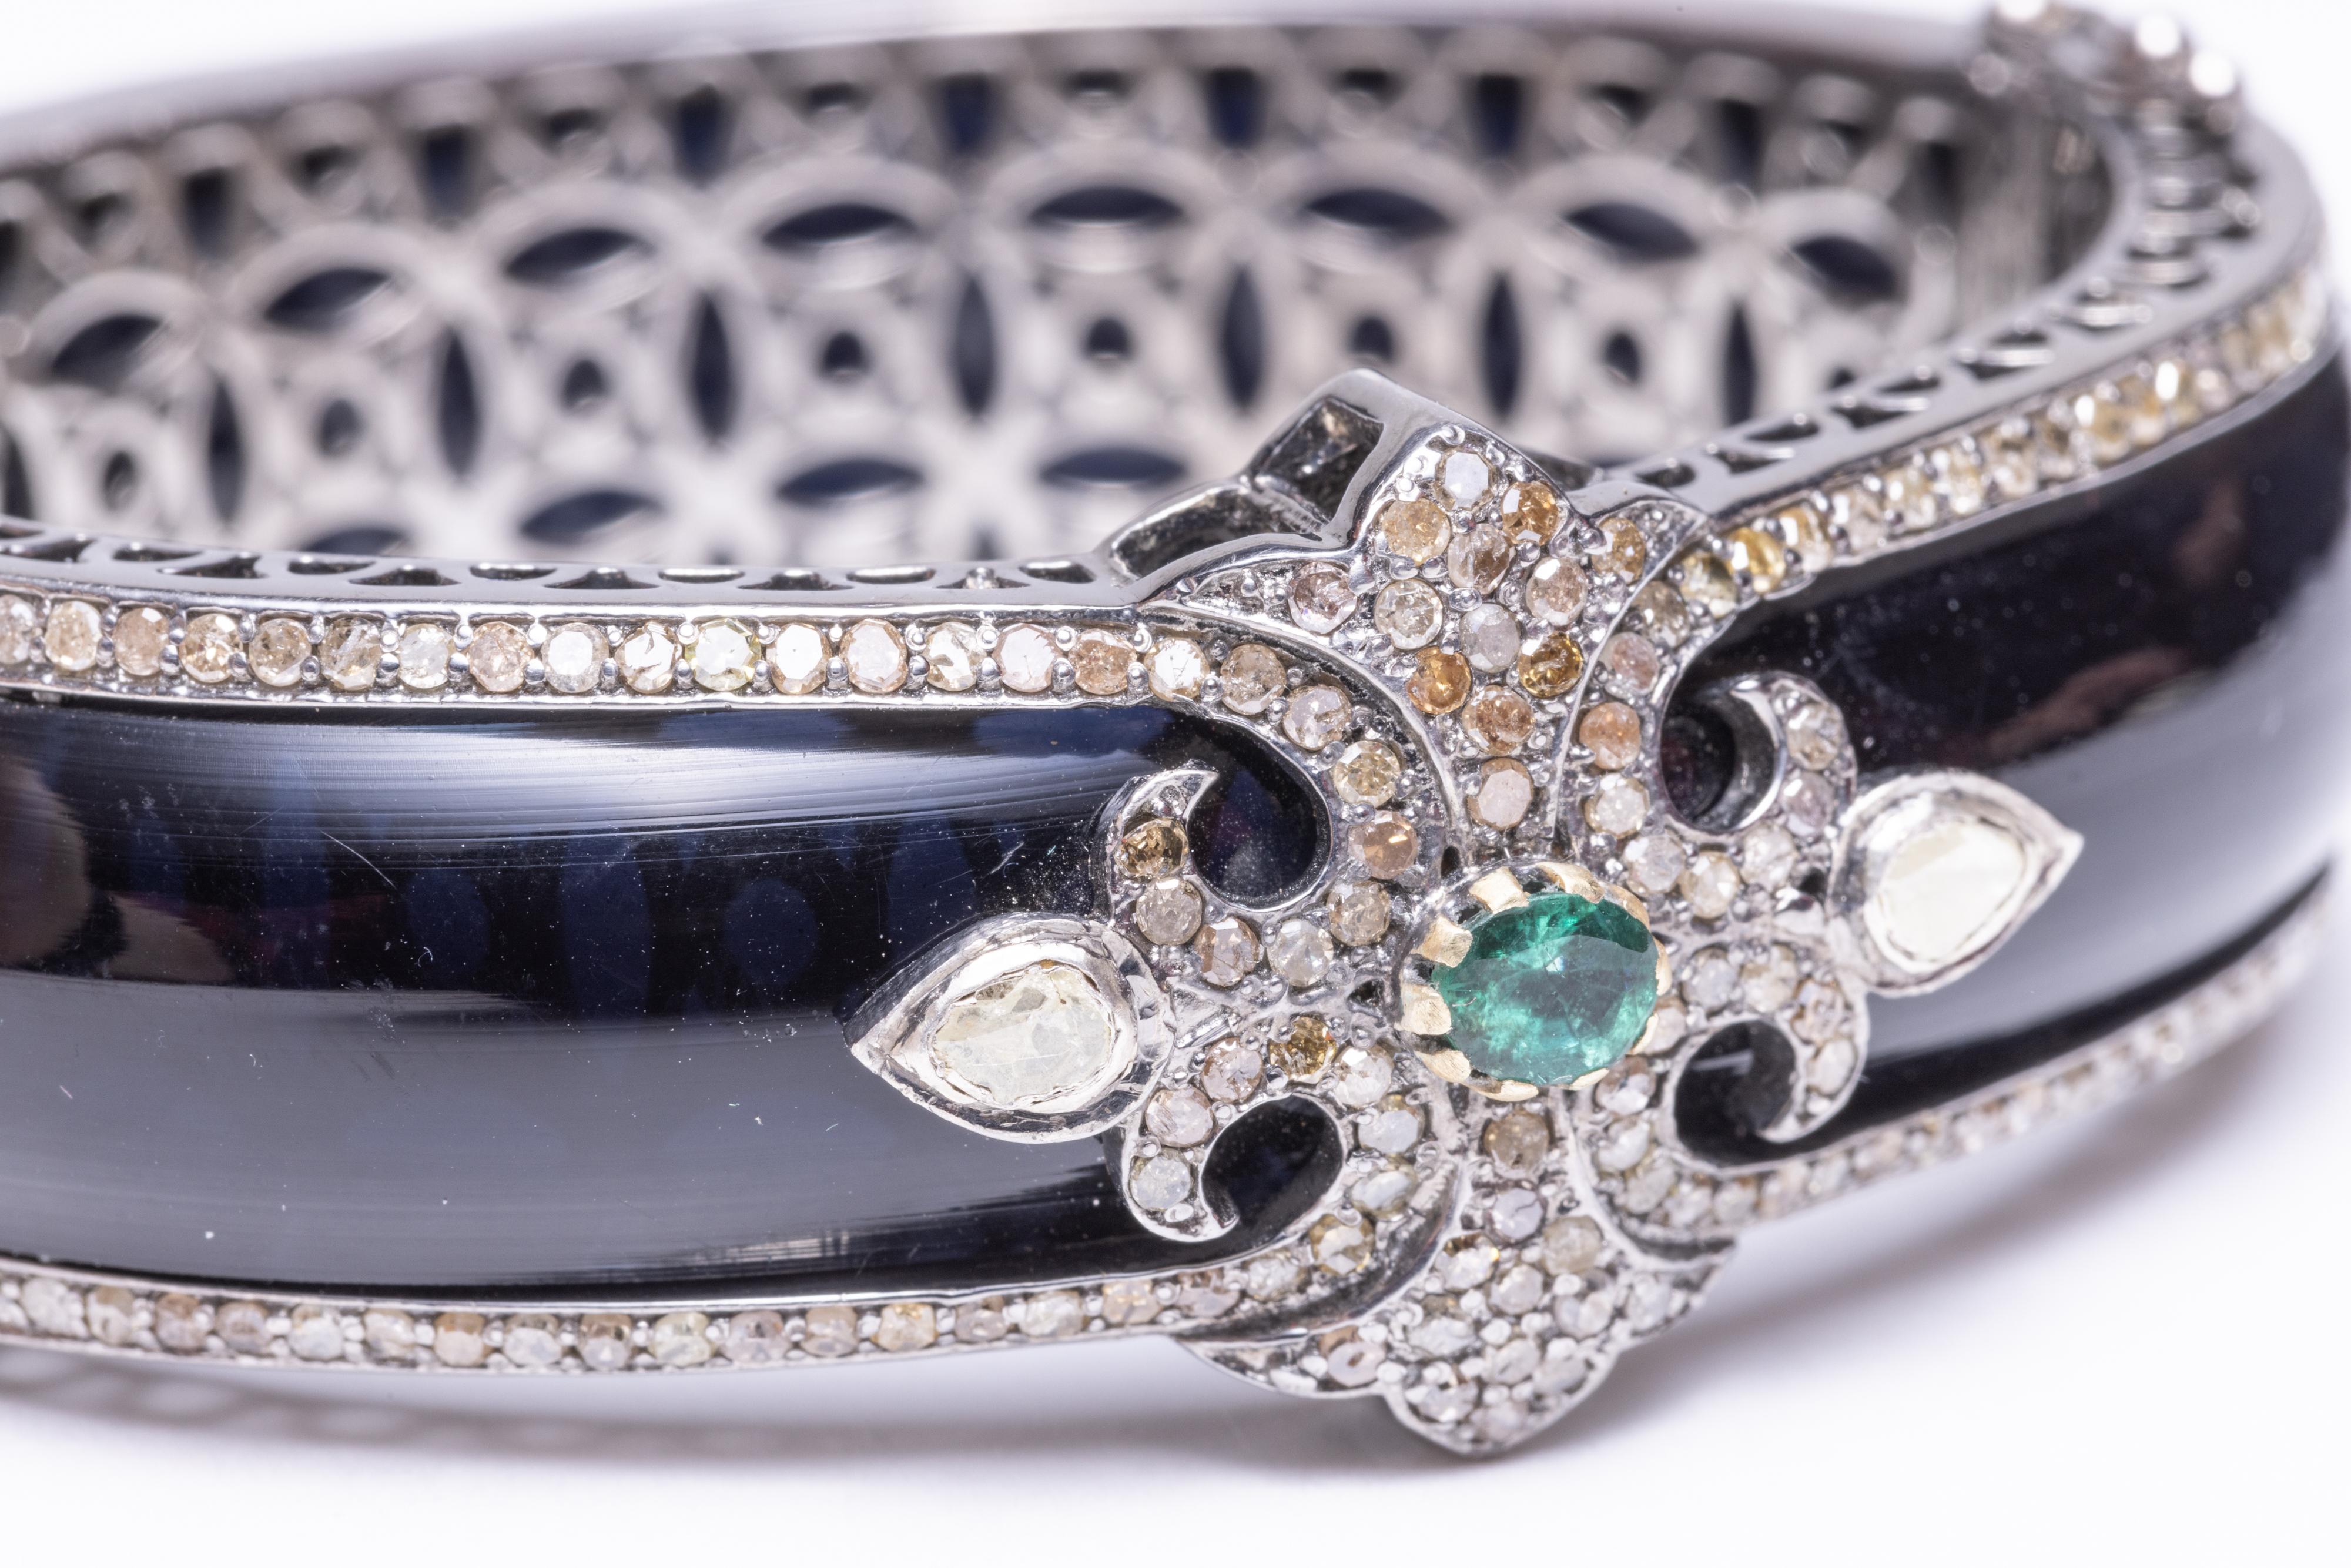 Superbe bracelet manchette en bakélite noire bordé de part et d'autre de diamants sertis pave.  La partie supérieure est ornée de diamants pavés supplémentaires, d'une émeraude ovale à facettes et de deux diamants taillés en rose de chaque côté.  La